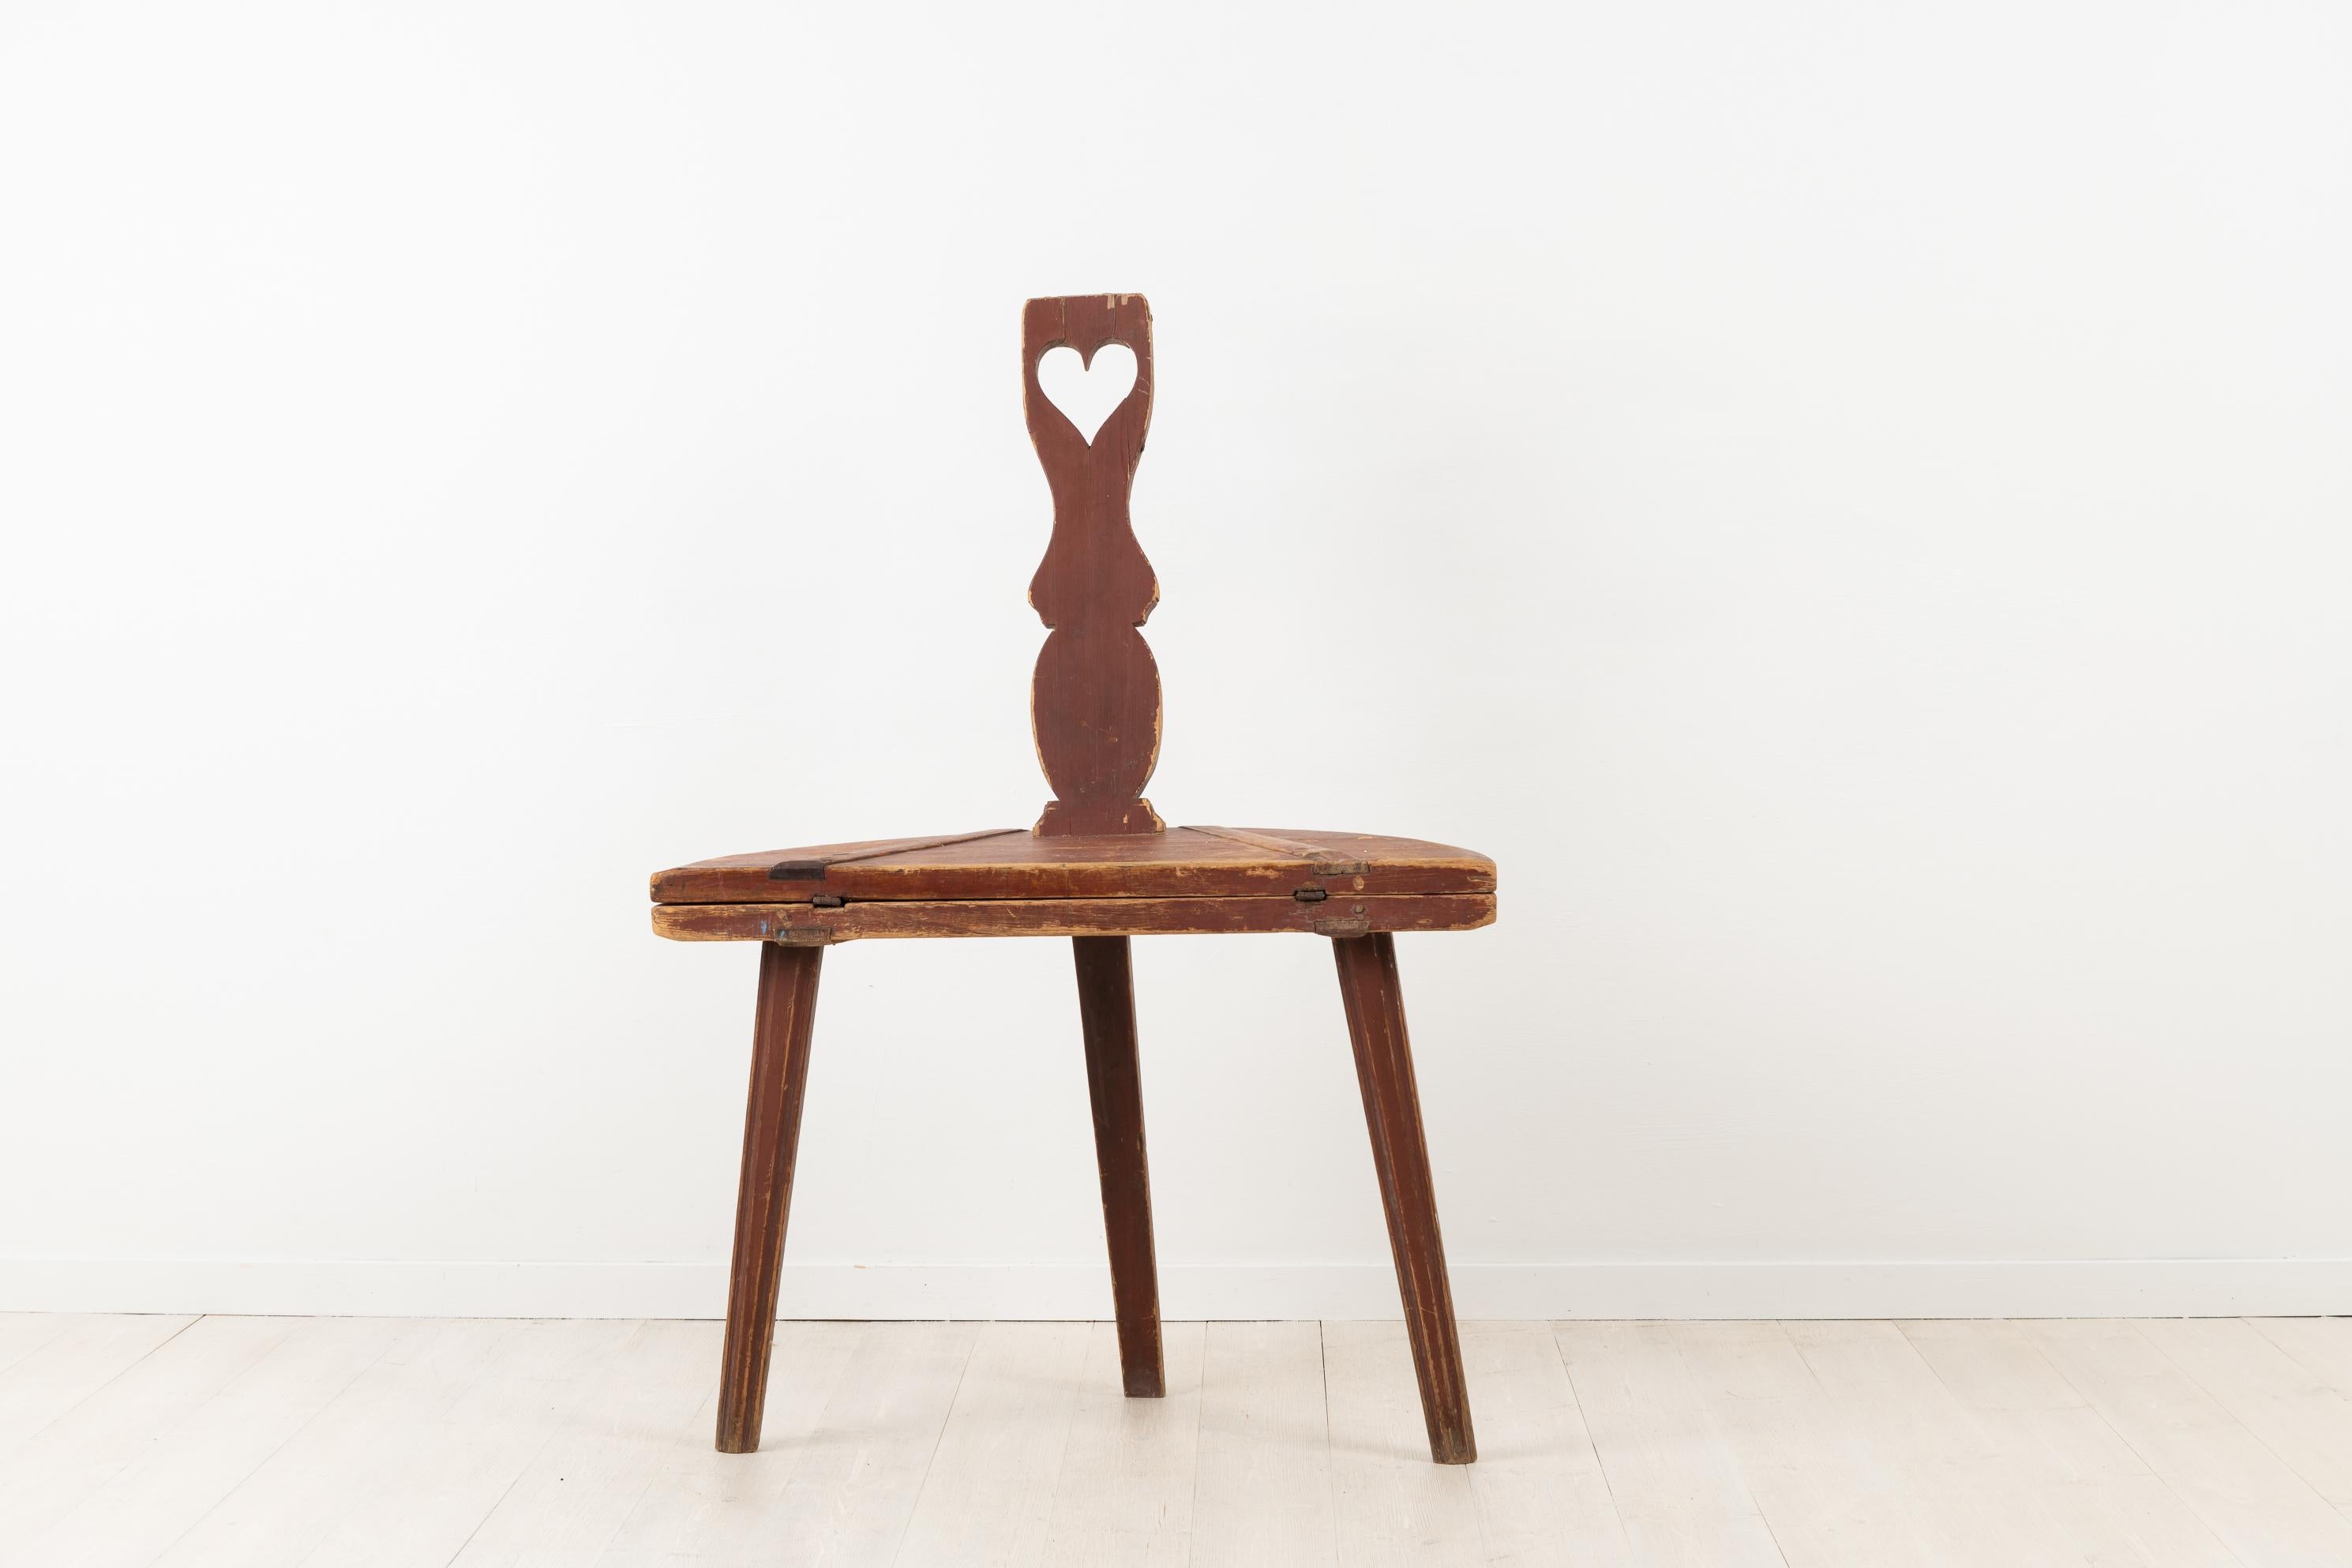 Combinaison de meubles Folk Art table et chaise. Les meubles combinés sont parfaits pour les petits espaces et ce meuble convient parfaitement comme table basse ou table d'appoint. Fabriqué au début des années 1800, vers 1820-1840. Décoré d'un cœur.